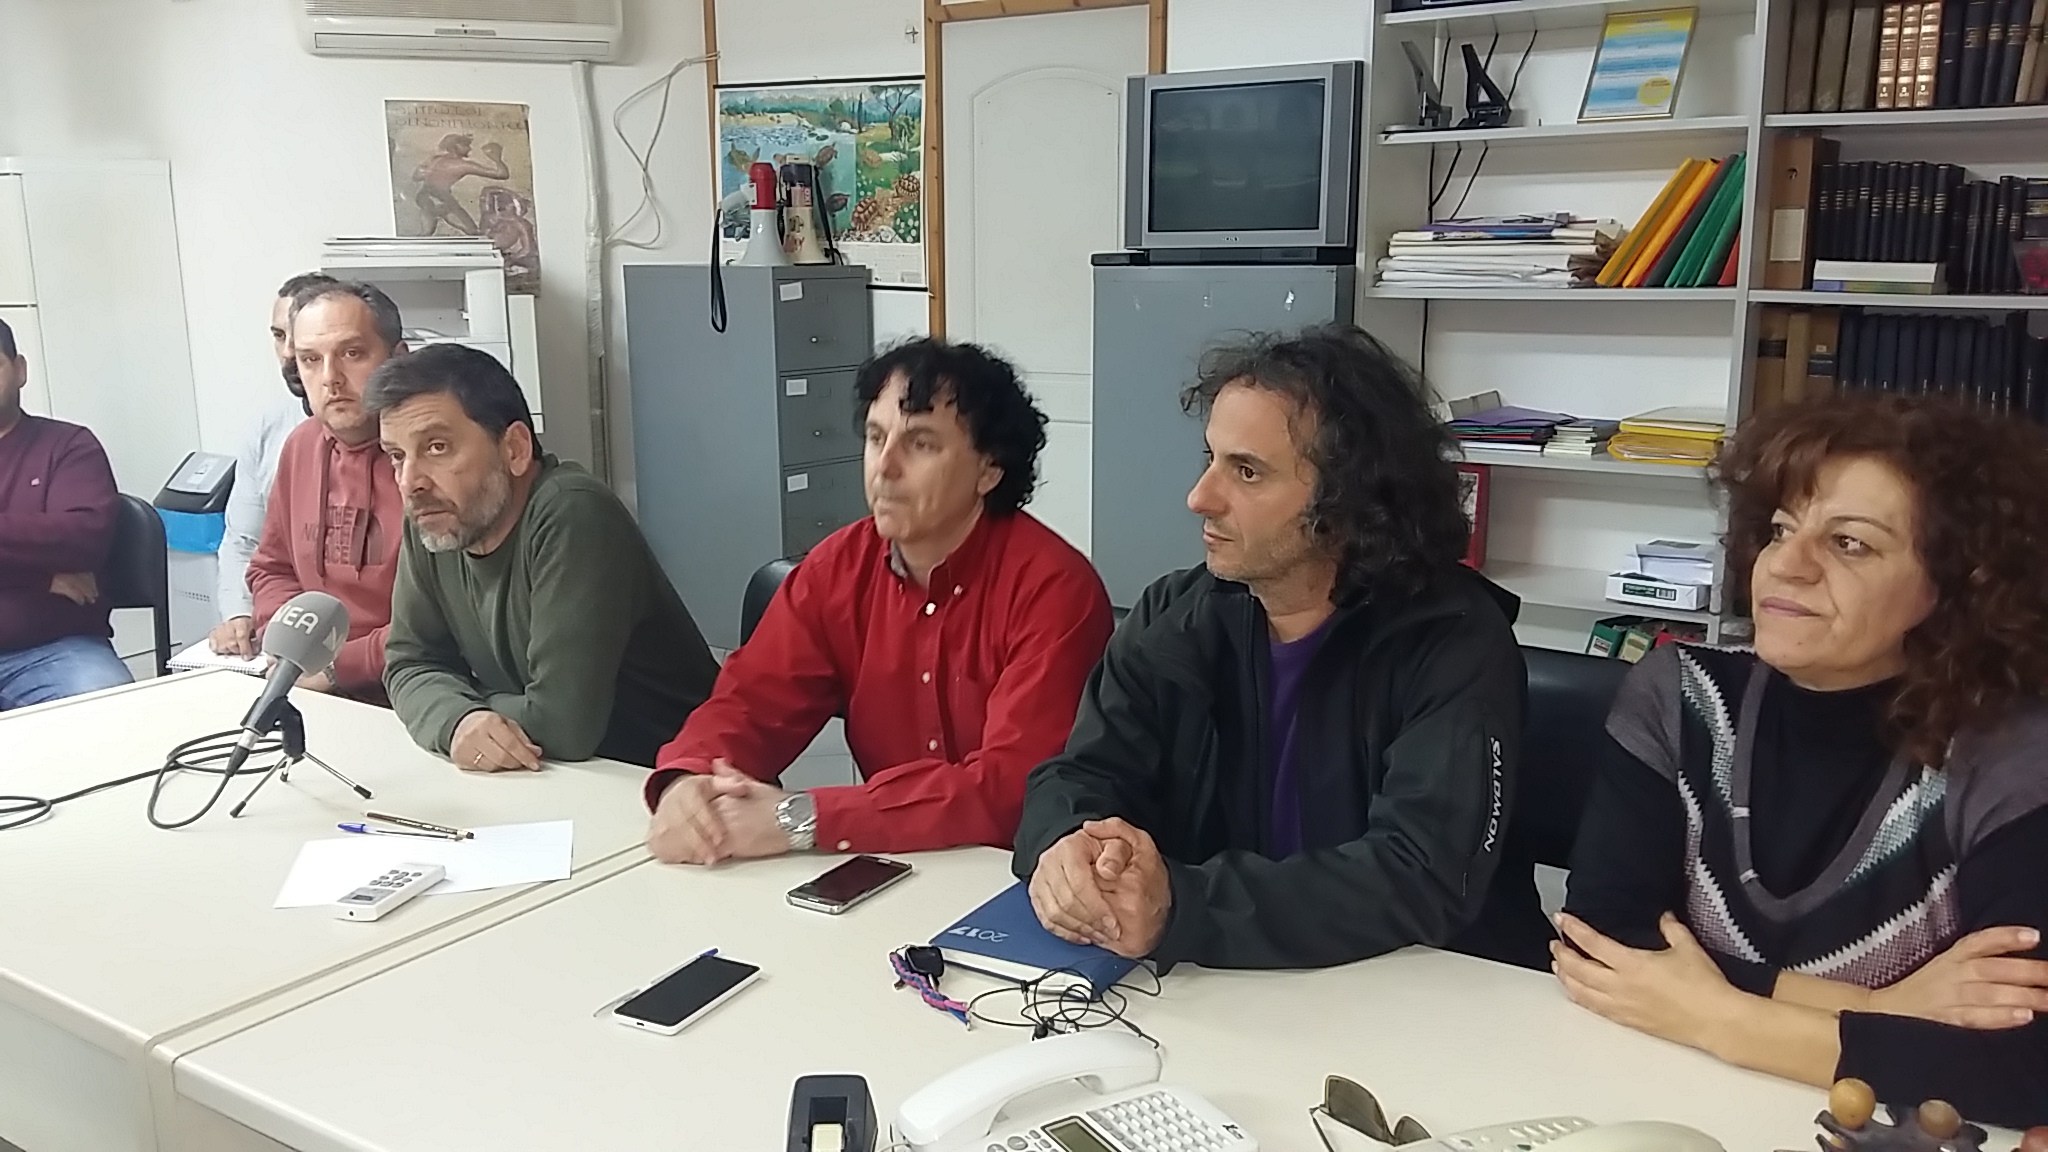 Ξαναρχίζουν τα μαθήματα αλβανικών στο 1ο Γυμνάσιο Ελ. Βενιζέλου